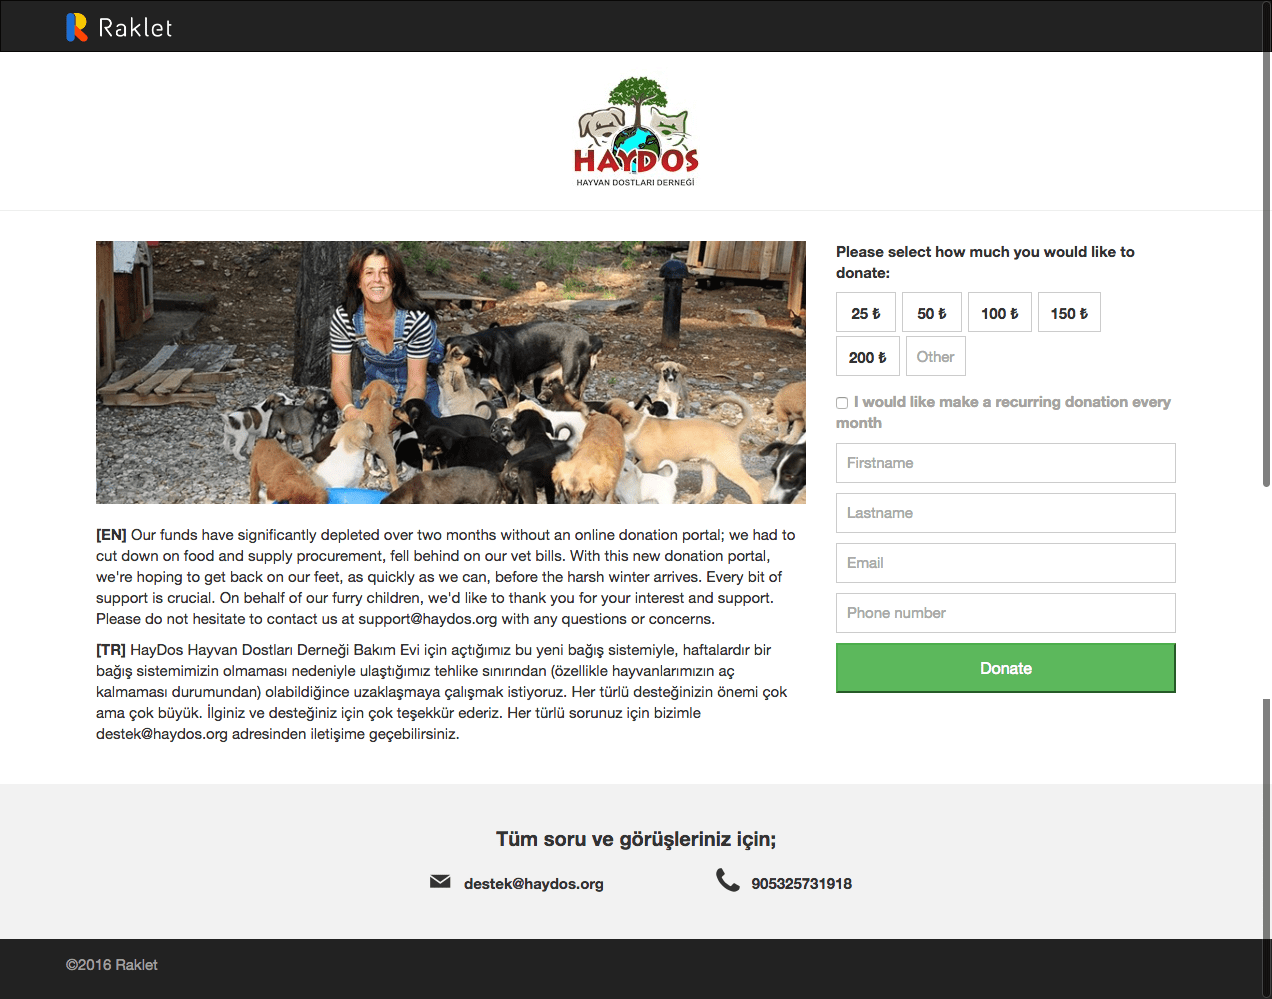 Haydos' public donation page